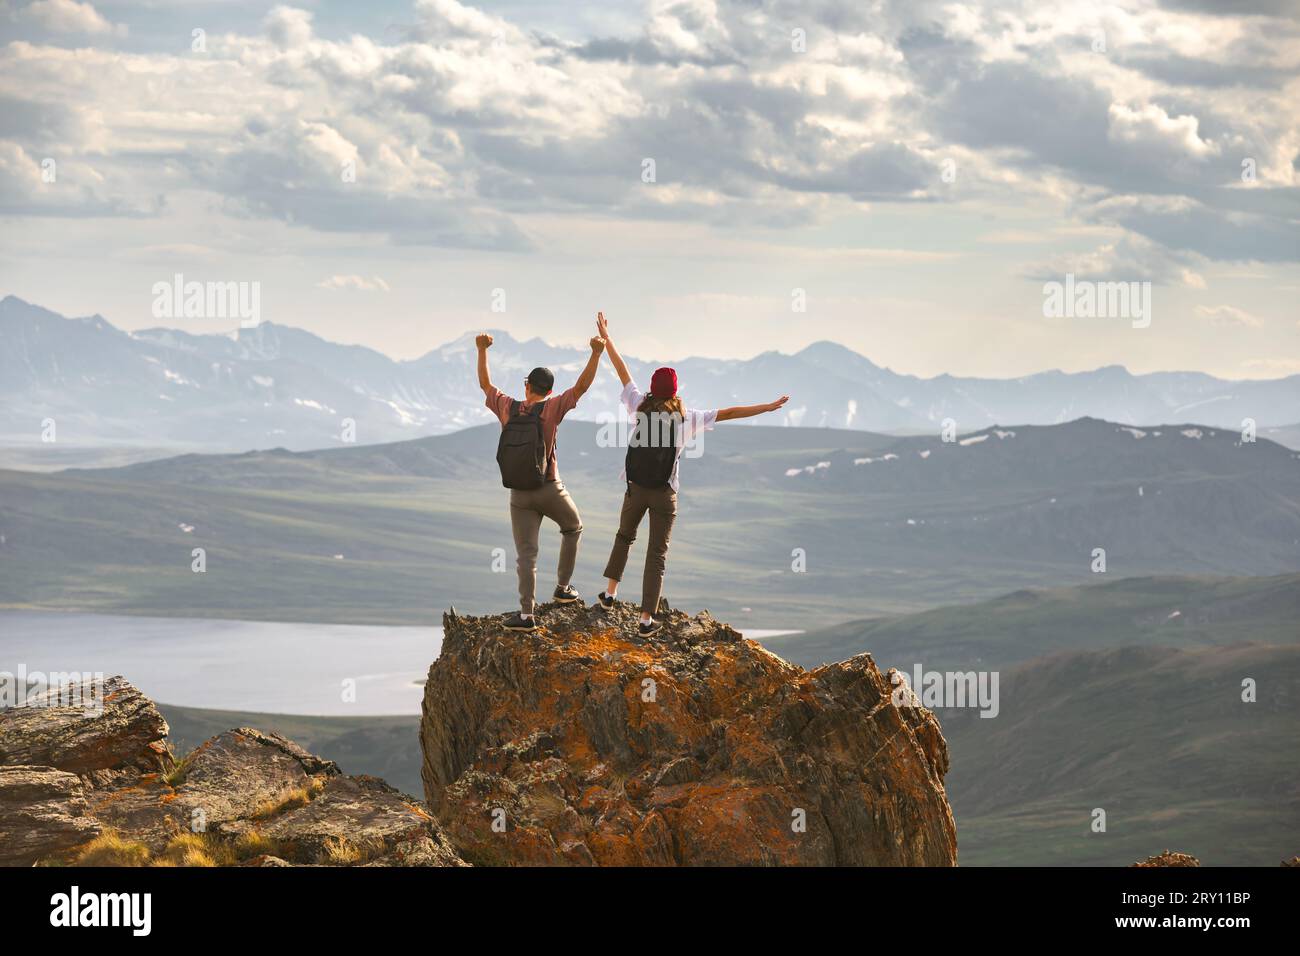 Jeune couple de randonneurs avec des sacs à dos sont debout au sommet de la montagne à bras ouverts dans la pose de vainqueur Banque D'Images